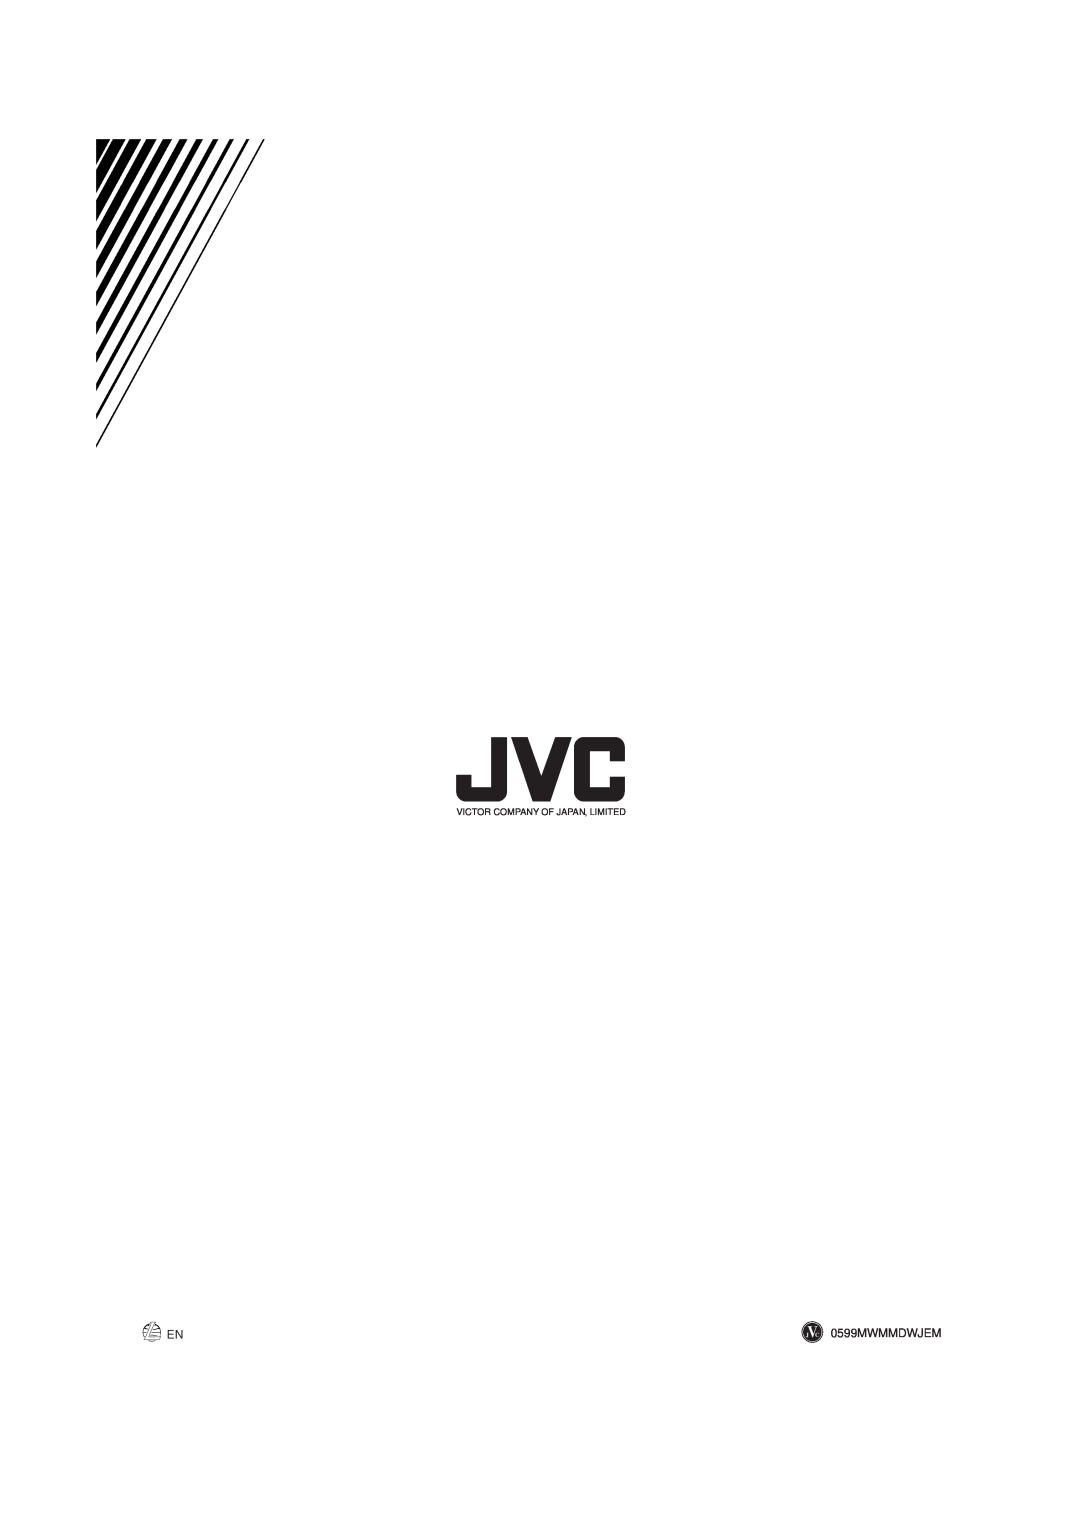 JVC MX-J50 manual 0599MWMMDWJEM, Victor Company Of Japan, Limited 